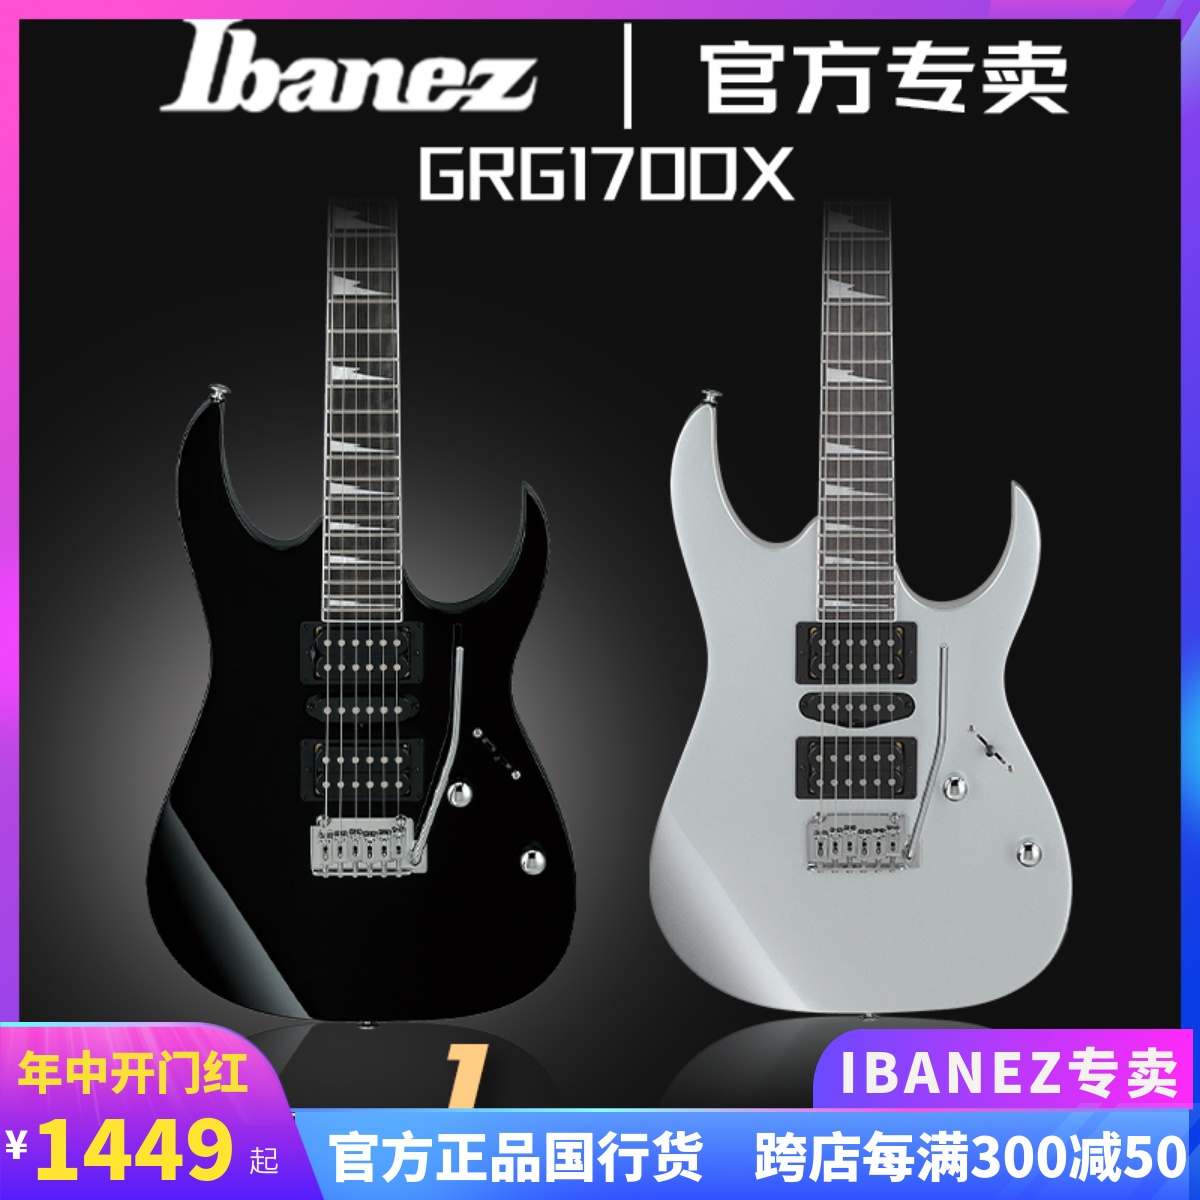 正品日本IBANEZ电吉他依班娜GRG170DX专业小双摇24品电吉他套装 乐器/吉他/钢琴/配件 吉他-电吉他 原图主图